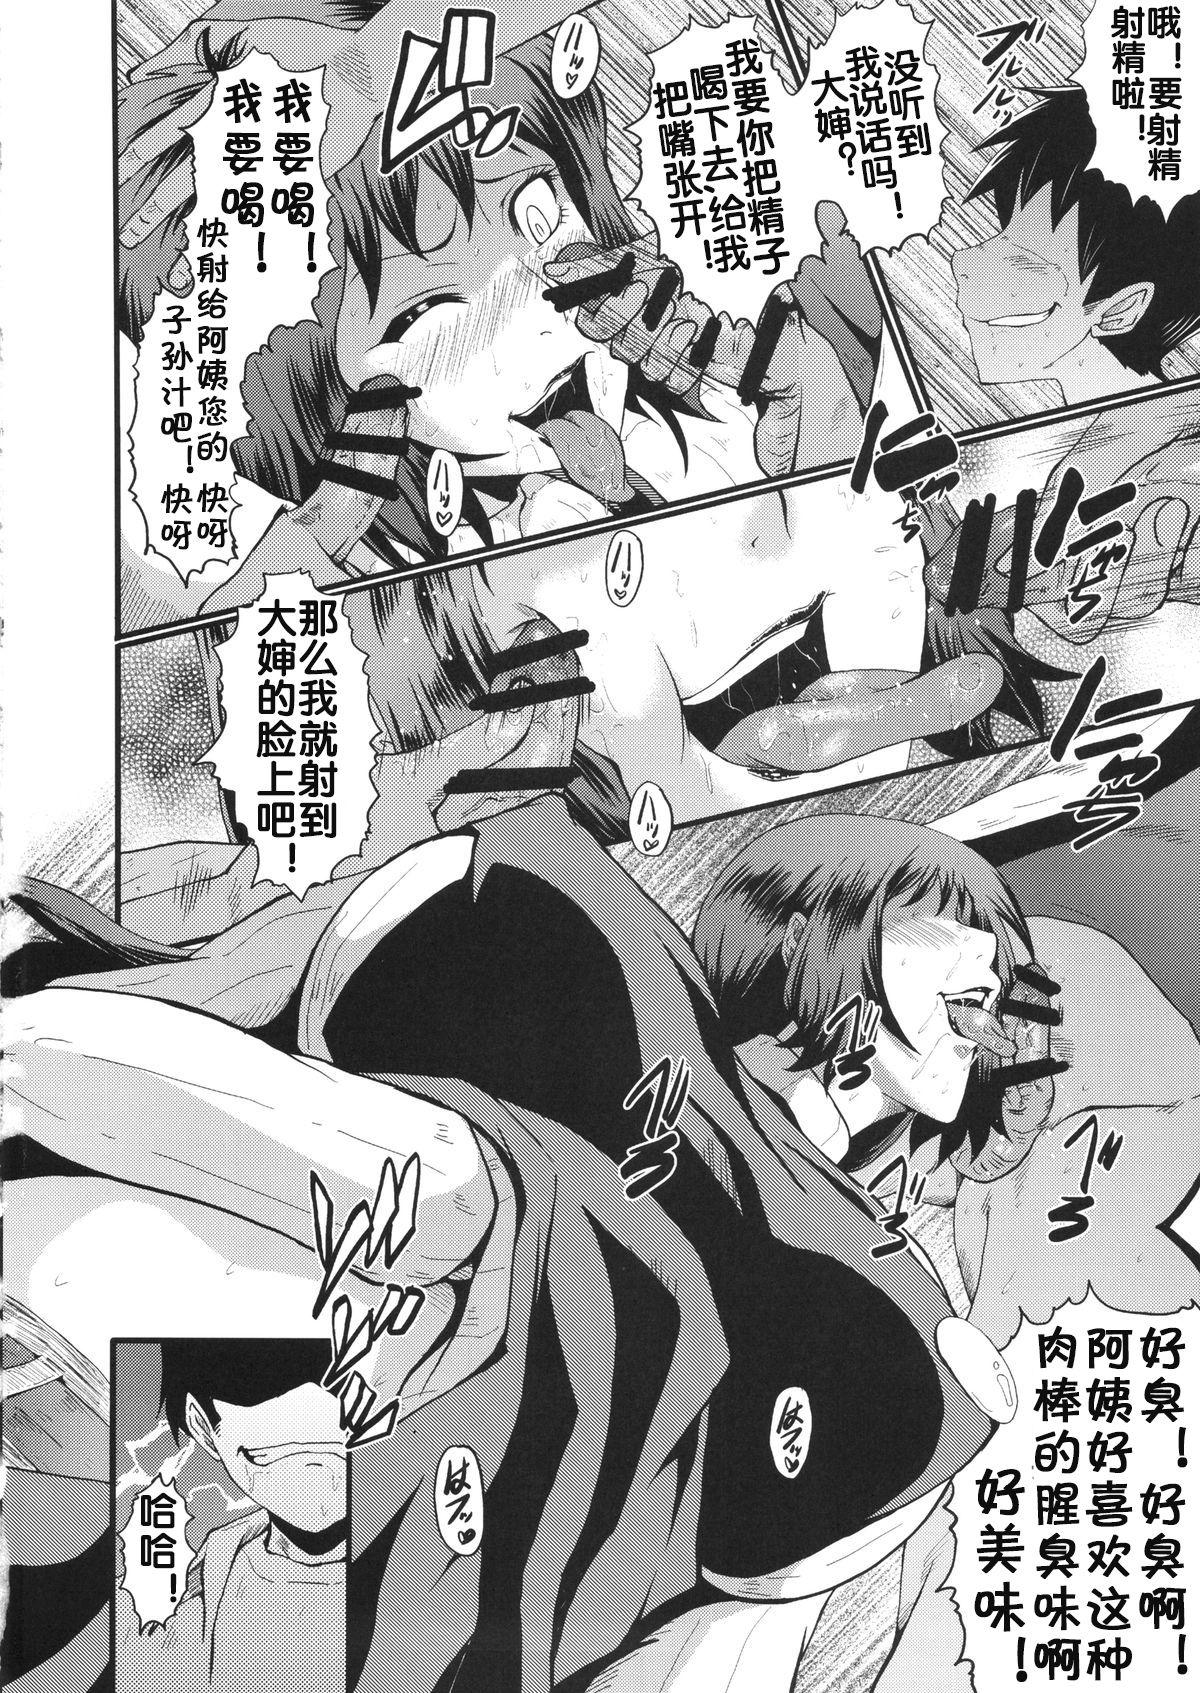 France Urabambi Vol. 49 Kaa-san wa Boku ga Shiranai Uchi ni Omanko ni DoHamari shite mashita. - Gundam build fighters Chinese - Page 9